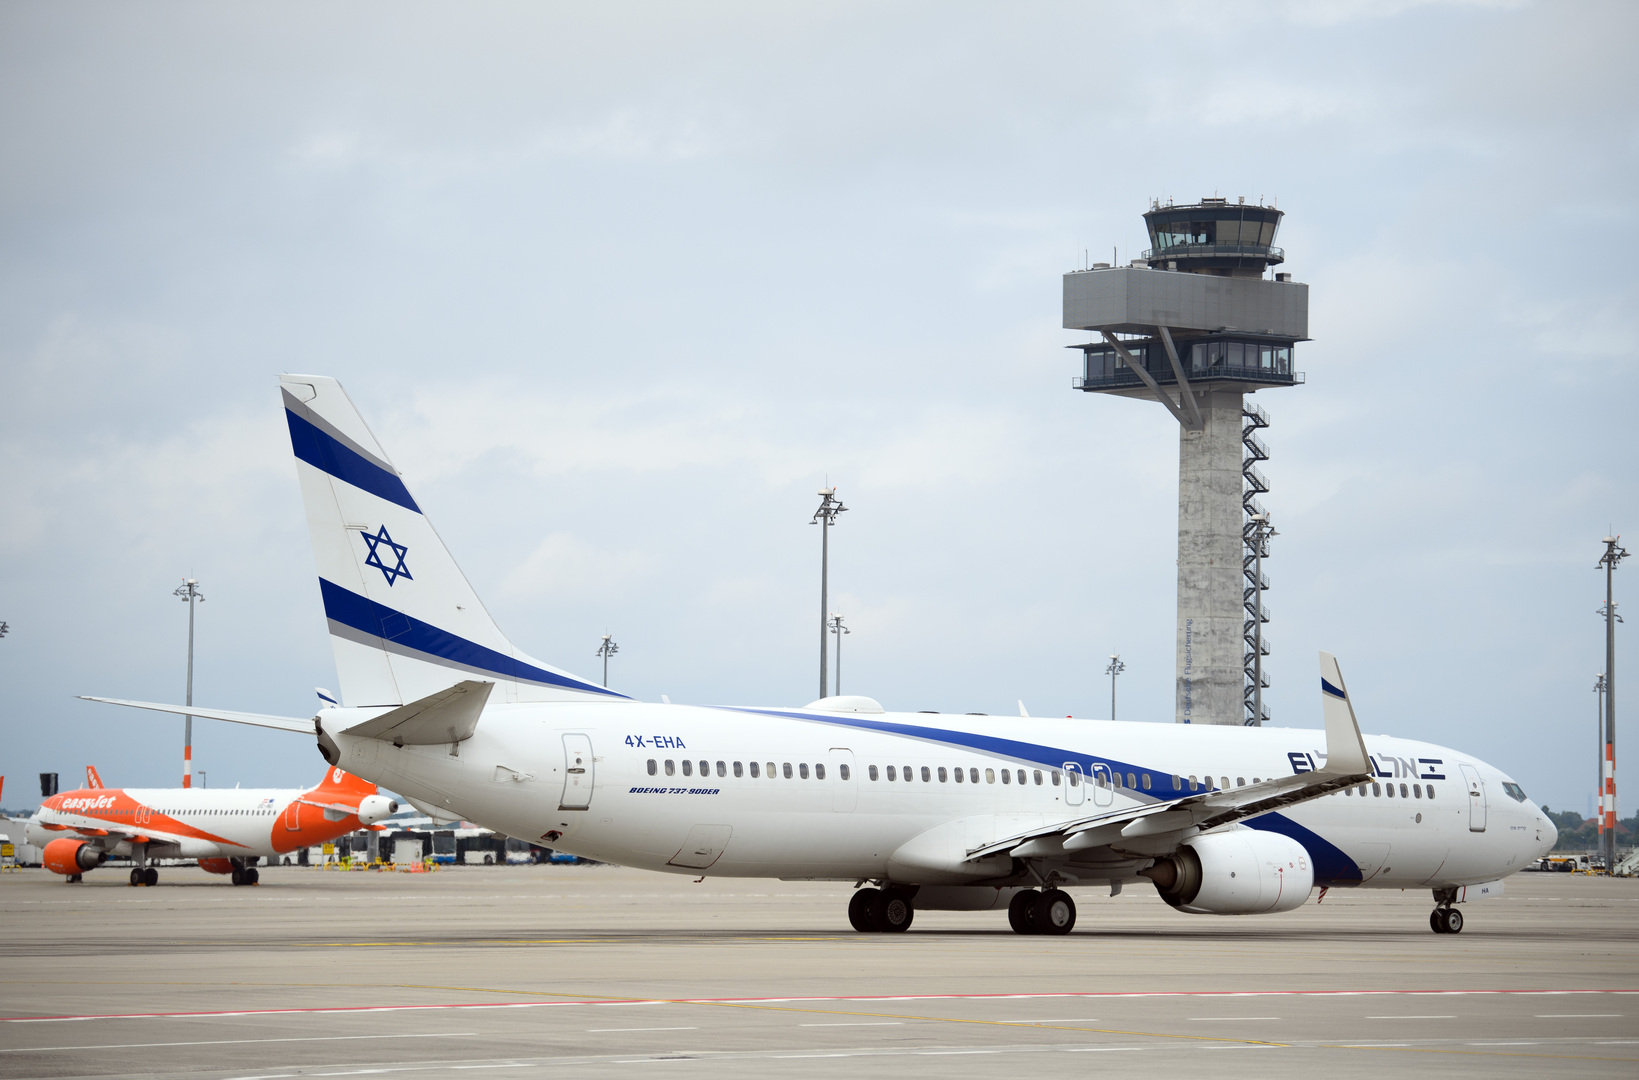 تركيا توضح ملابسات الهبوط الاضطراري لطائرة إسرائيلية بمطار أنطاليا